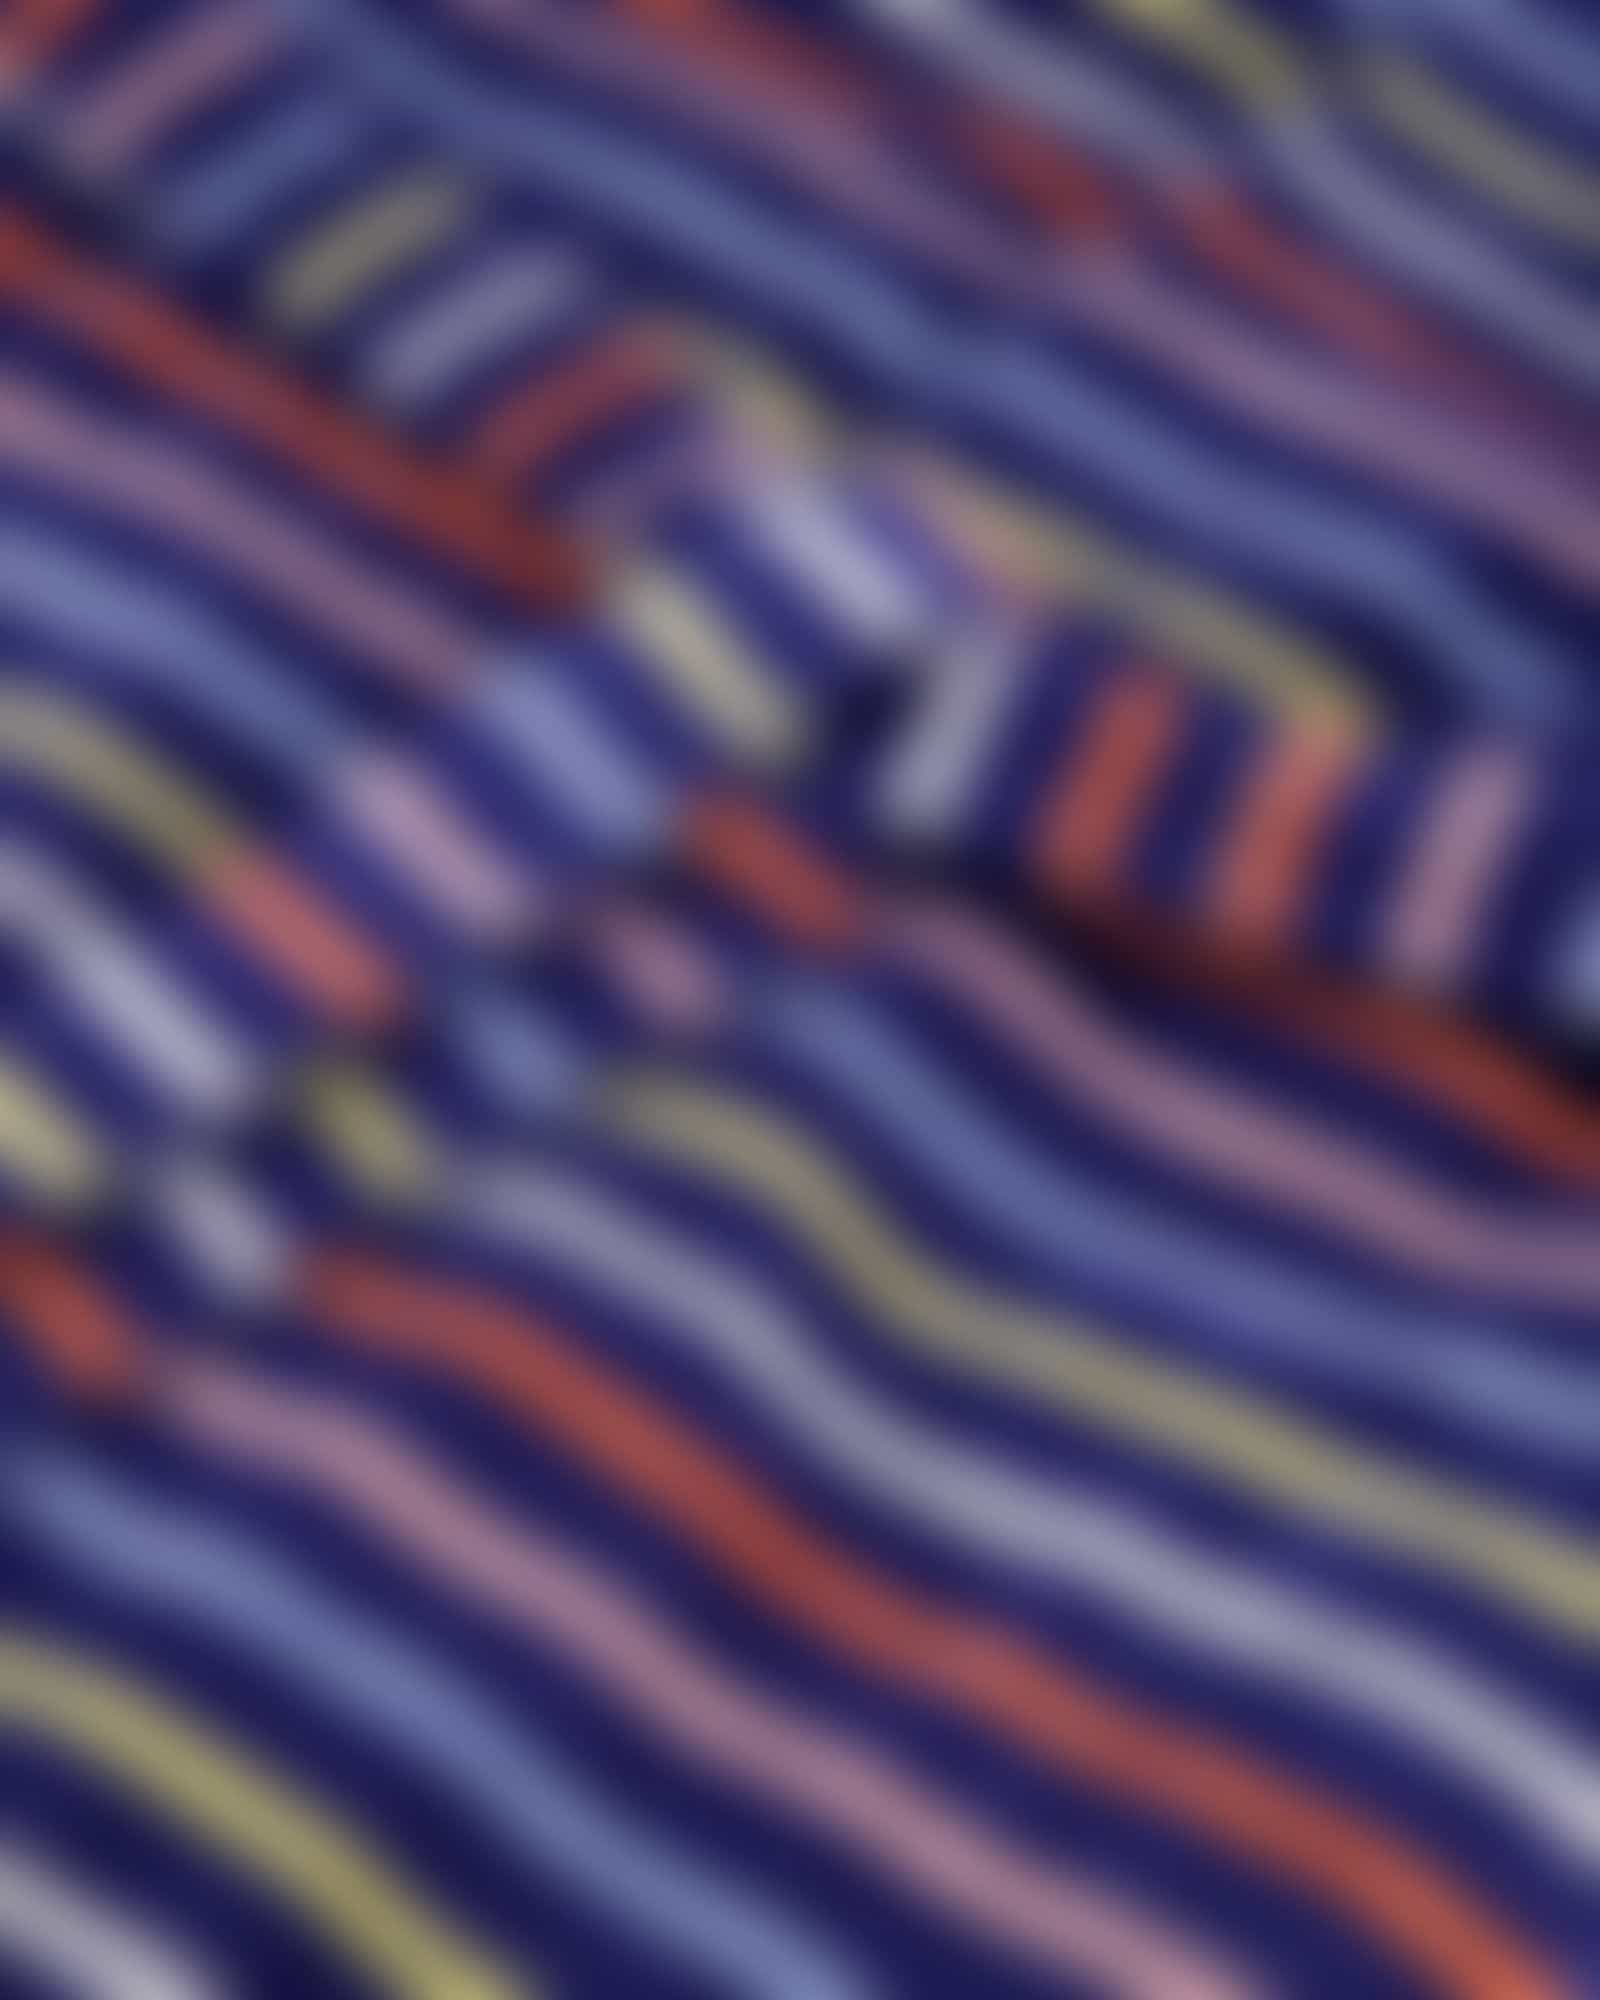 Cawö Damen Bademantel Kapuze 3344 - Farbe: blau-multicolor - 12 - M Detailbild 2